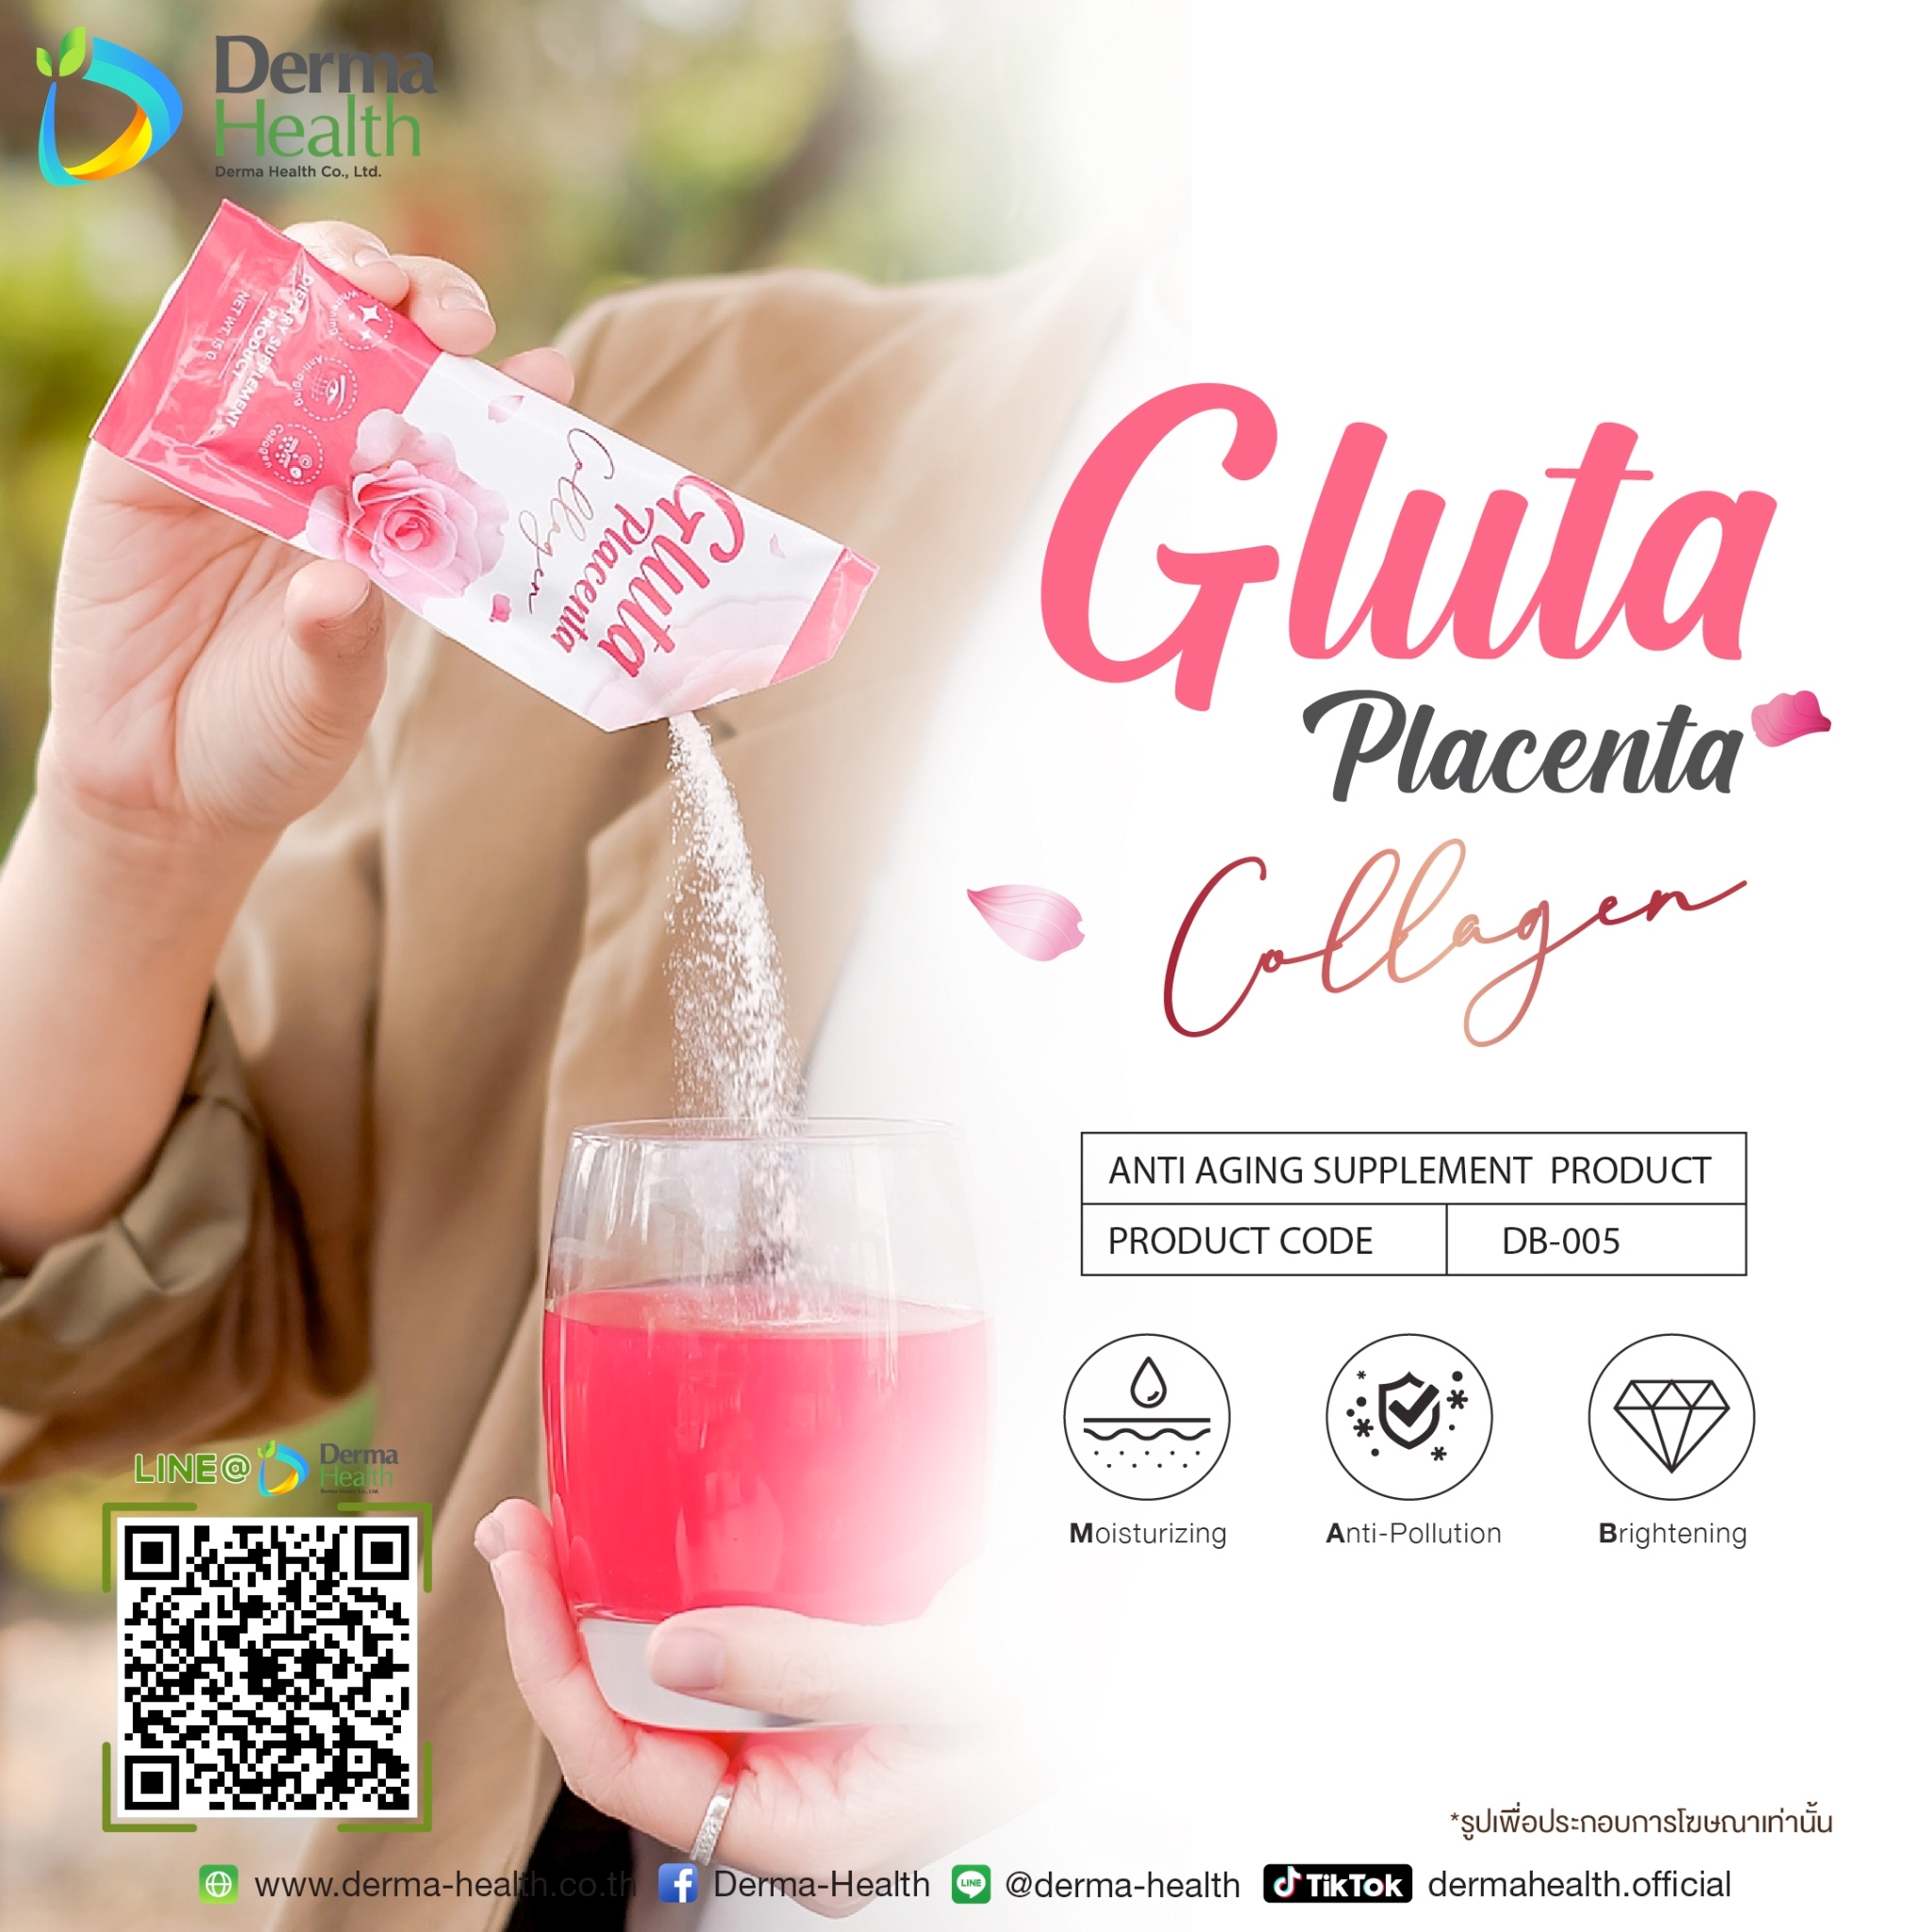 Gluta Placenta Collagen